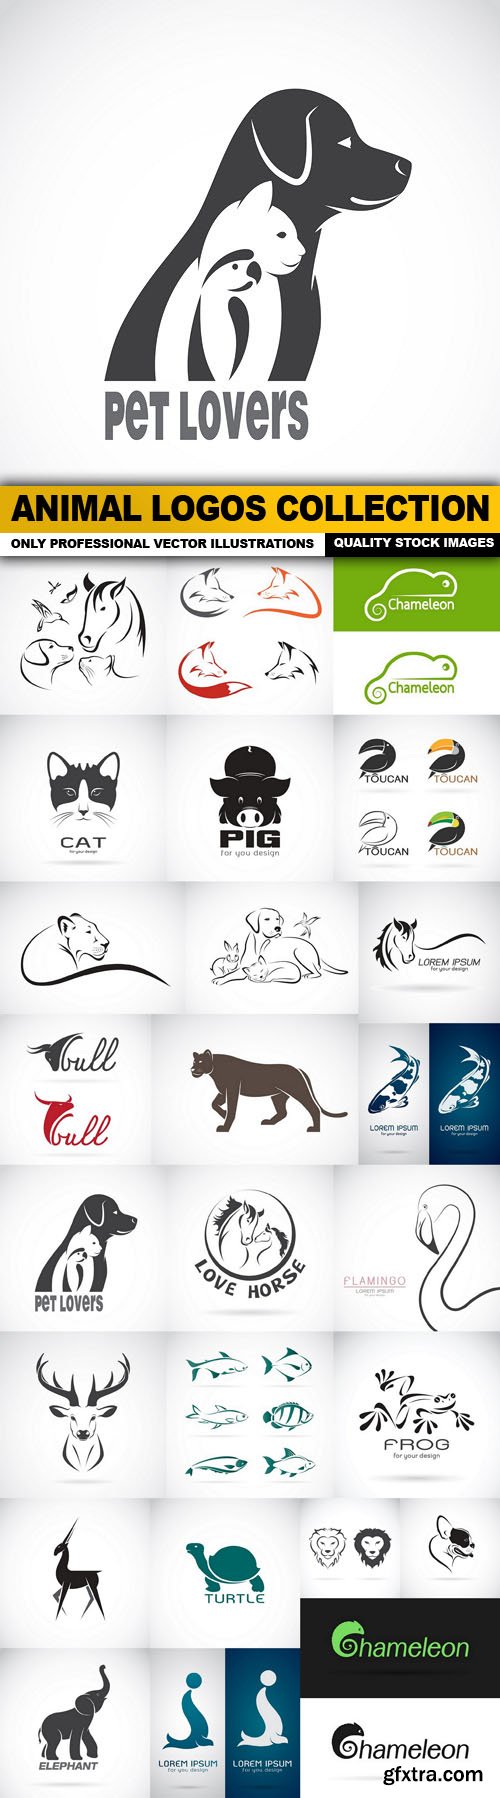 Animal Logos Collection - 25 Vector